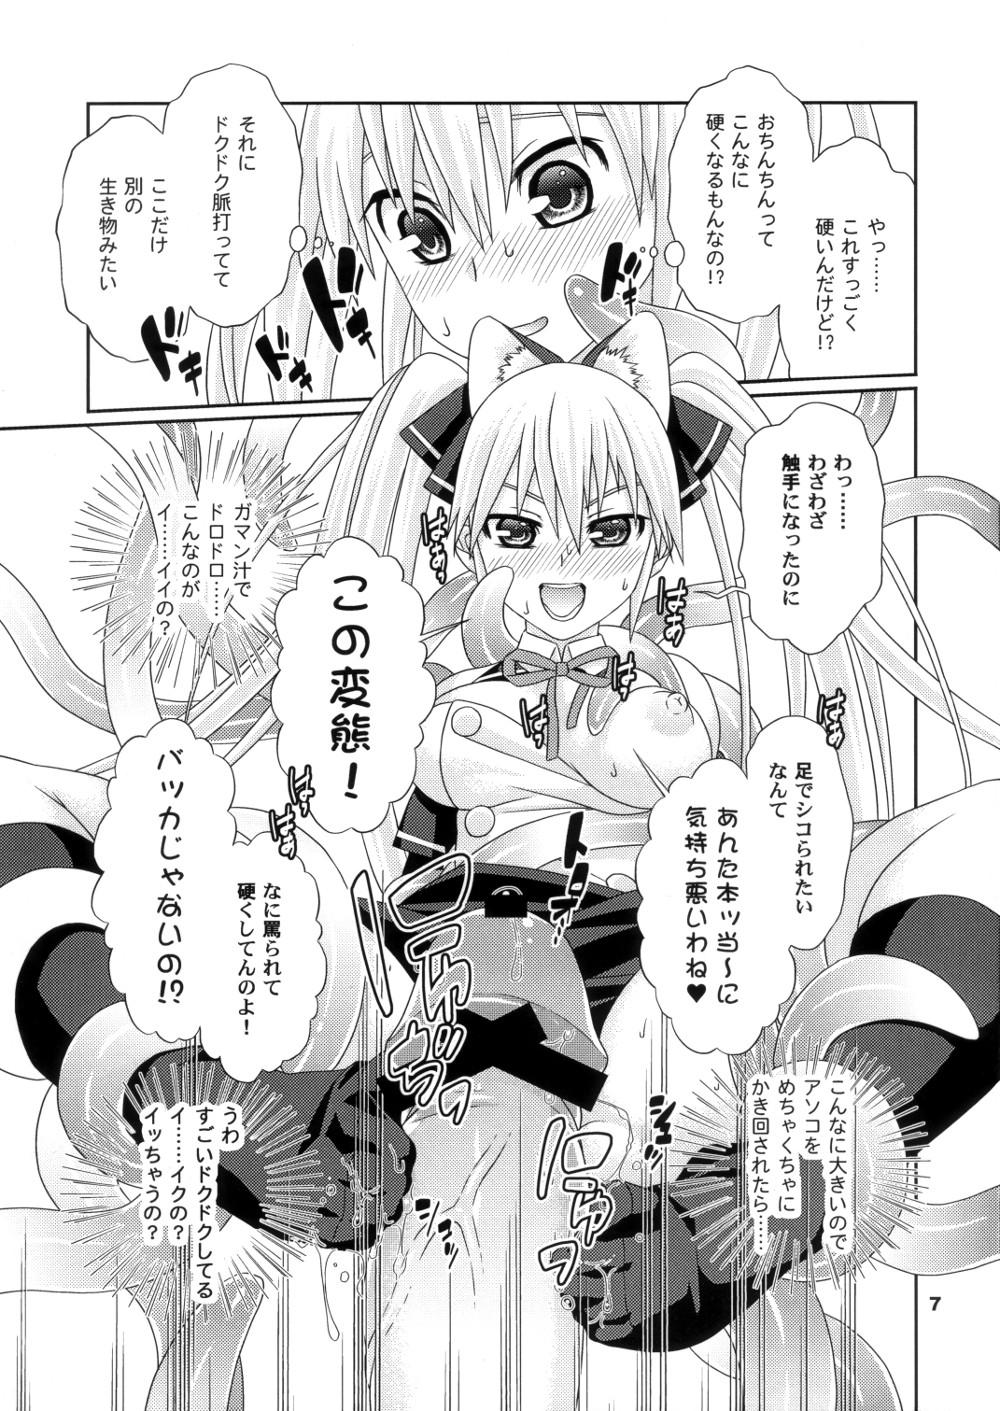 Pica Yume ga Kanattara Ii na! Zenkokuban - Dream c club Fun - Page 6